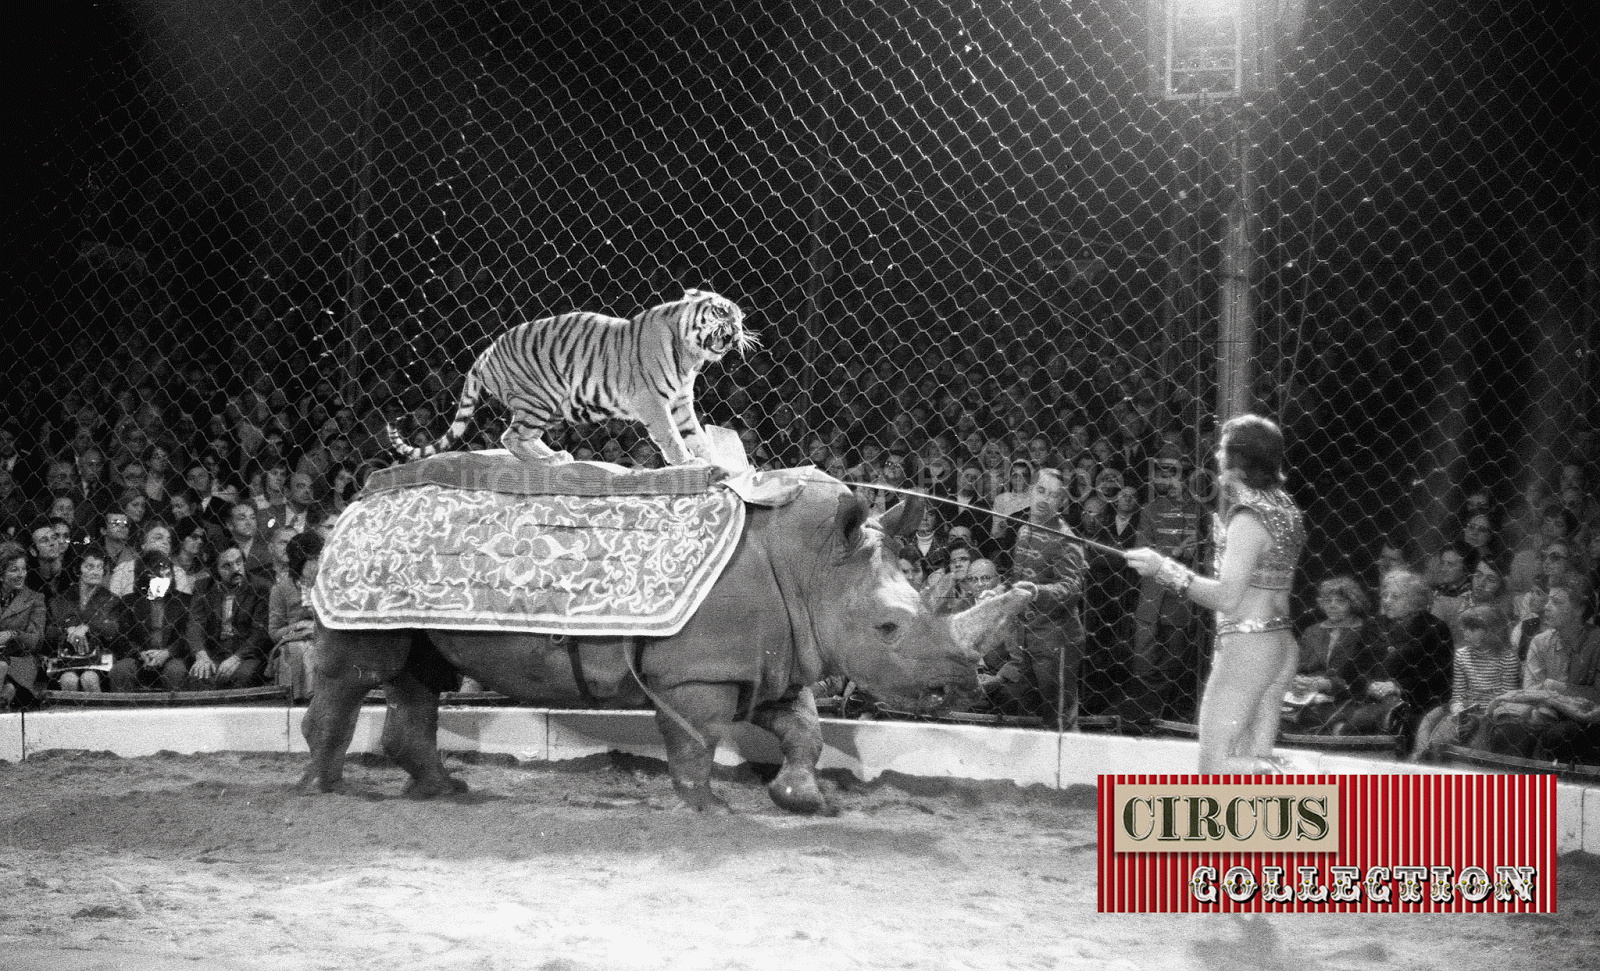 le tigre sur un rhinocéros présenté par Fredy Knie junior 